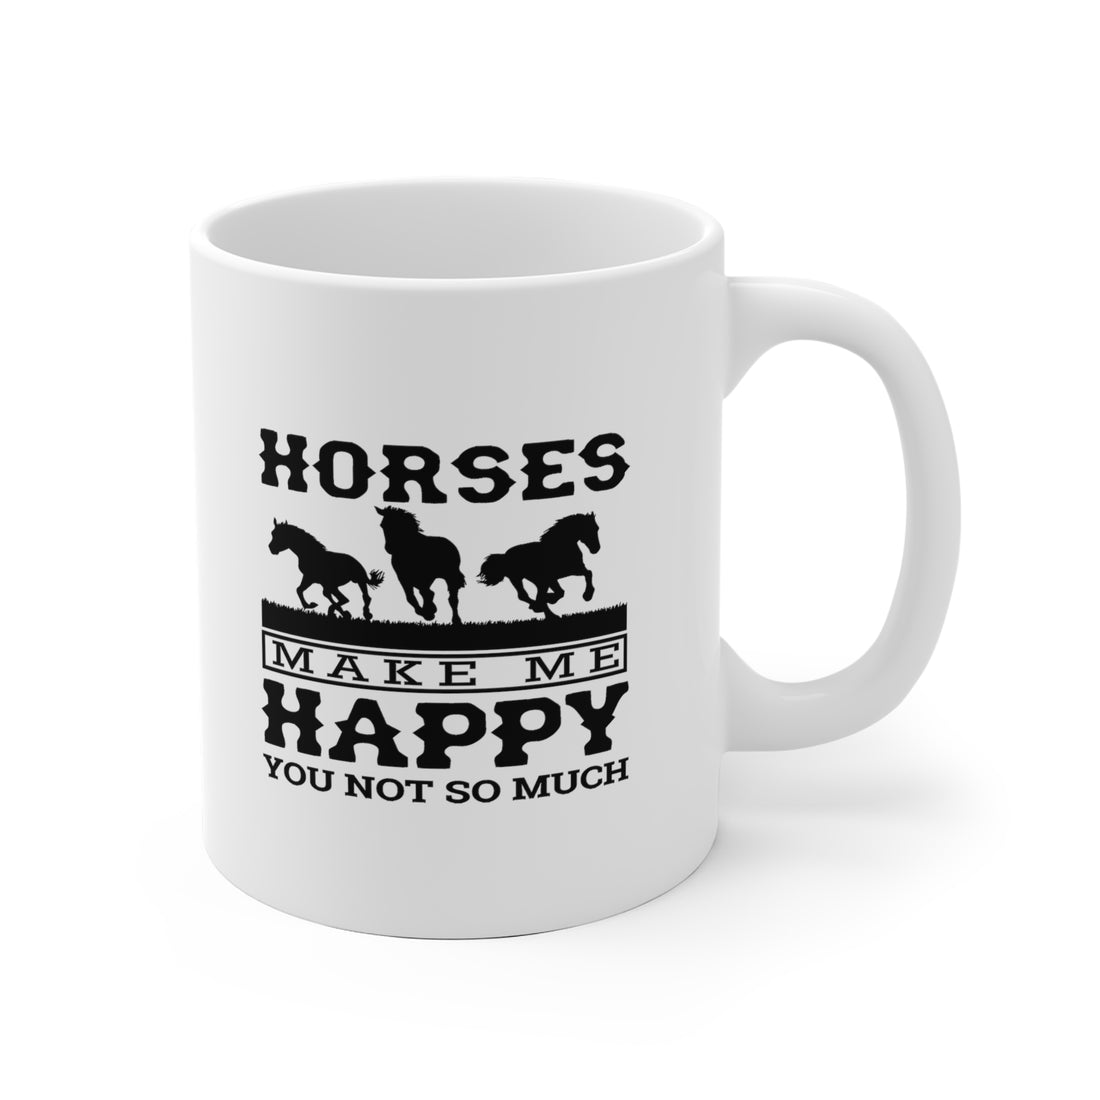 Horses Make Me Happy - White Ceramic Mug 2 sizes Available